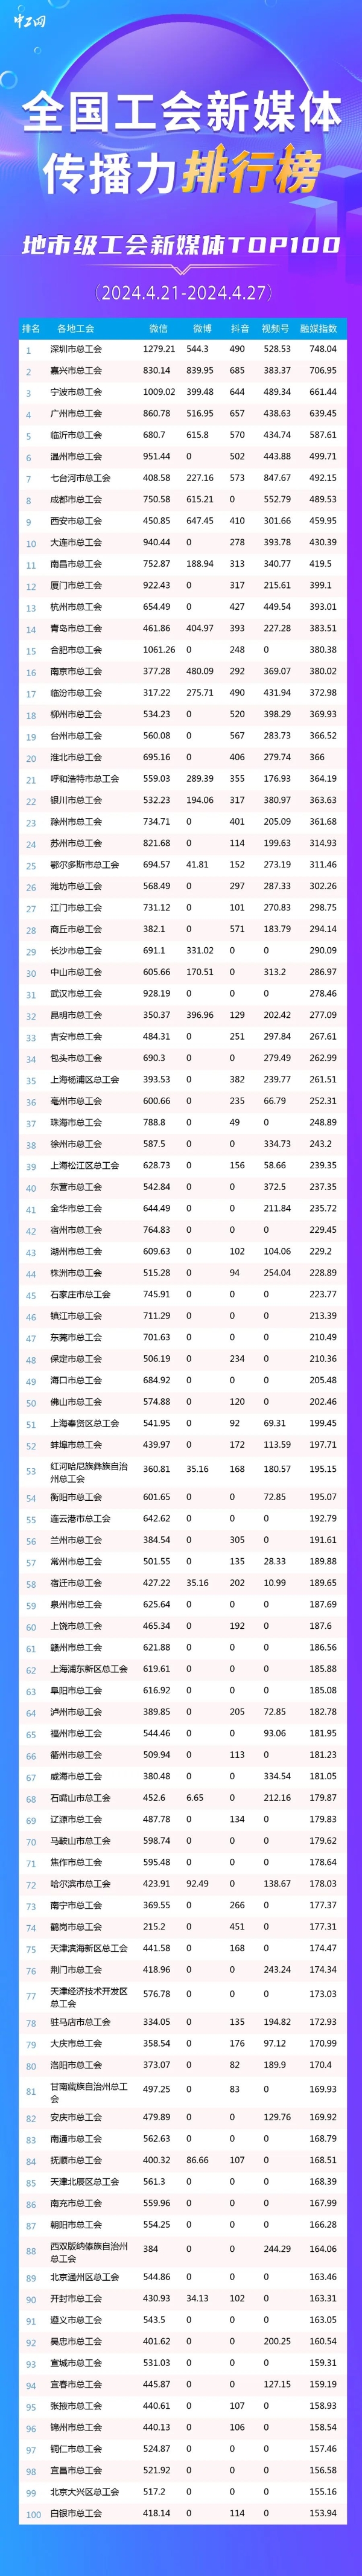 深圳、嘉兴、宁波位列前三！新一期全国地市级工会新媒体传播力TOP100出炉